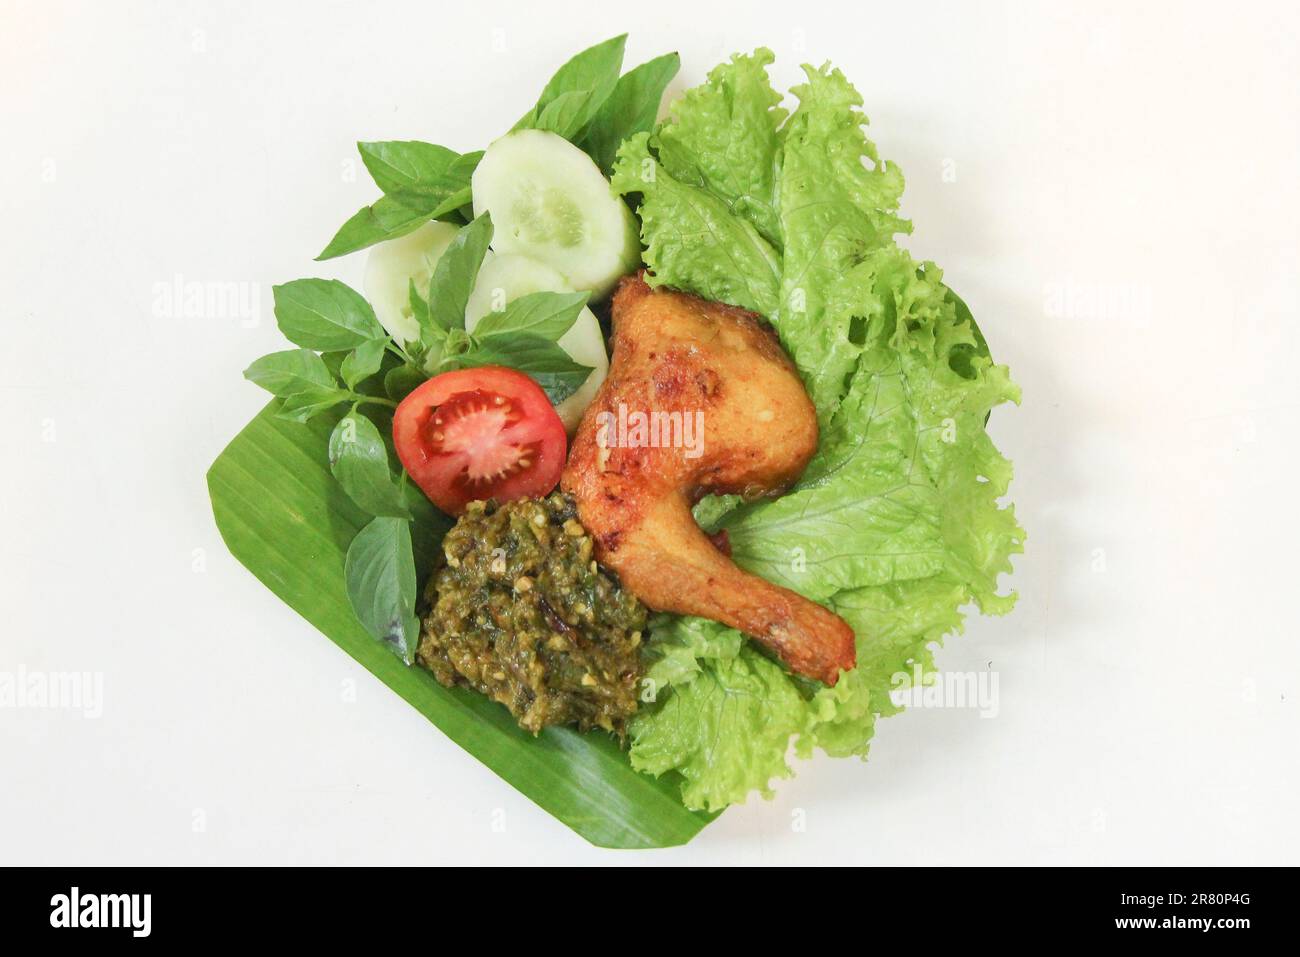 Galangal gebratenes Hähnchen, Sambal, Tomate, Gurke, Basilikum, Salat. Indonesische Küche auf Bananenblatt-Teller. Gastronomie-Fotografie auf weißem Hintergrund Stockfoto